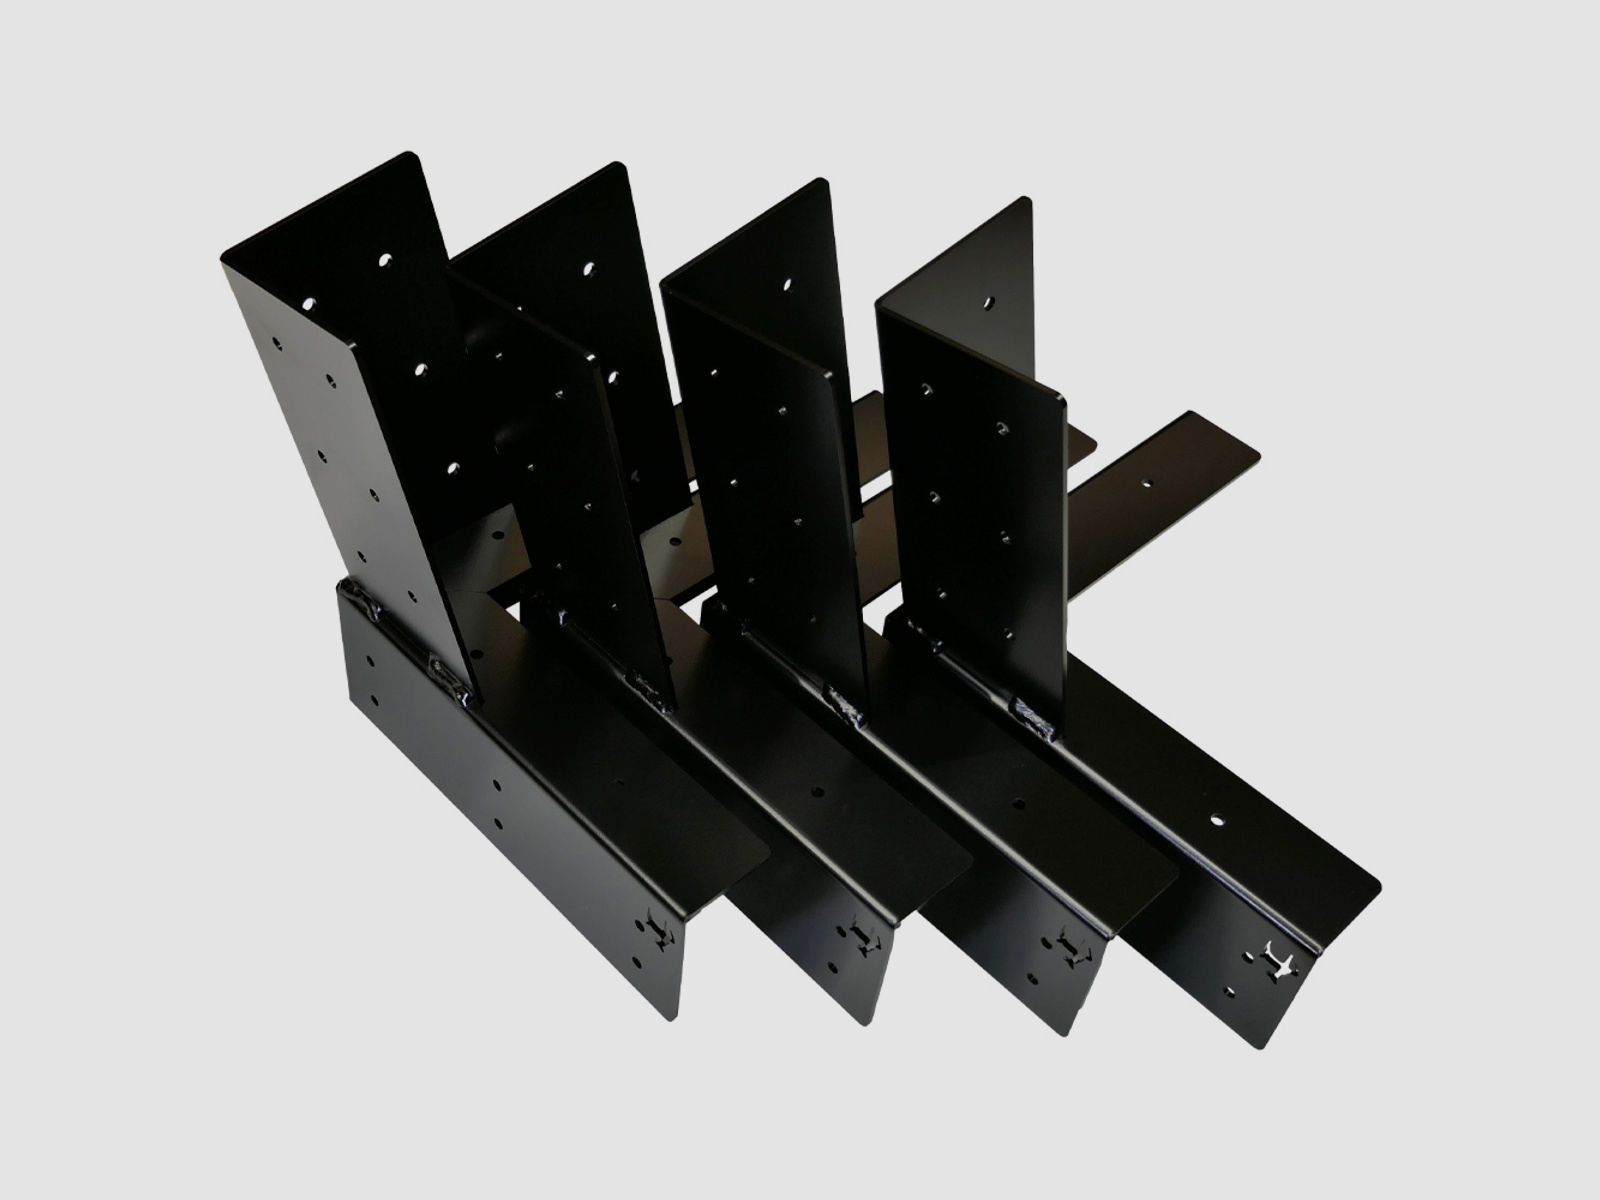 Hochwertige Kanzelecke aus Stahl 4er Set KTL beschichtet EXTREM ROBUST UND HALTBAR